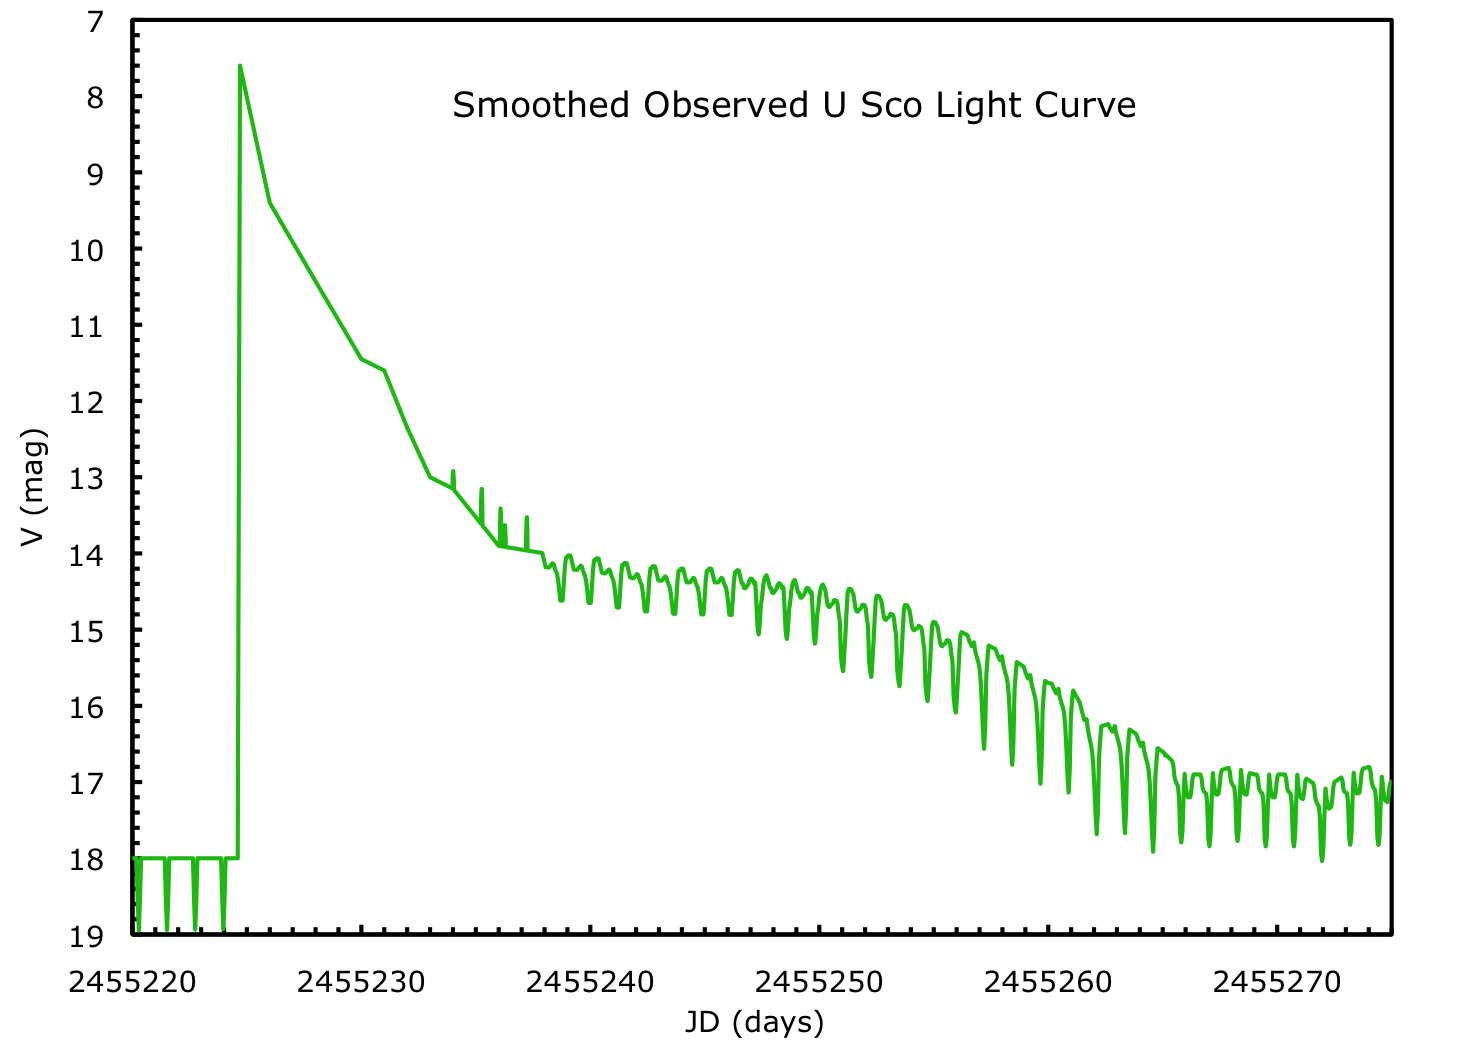 U Sco Smoothed Observed Light Curve